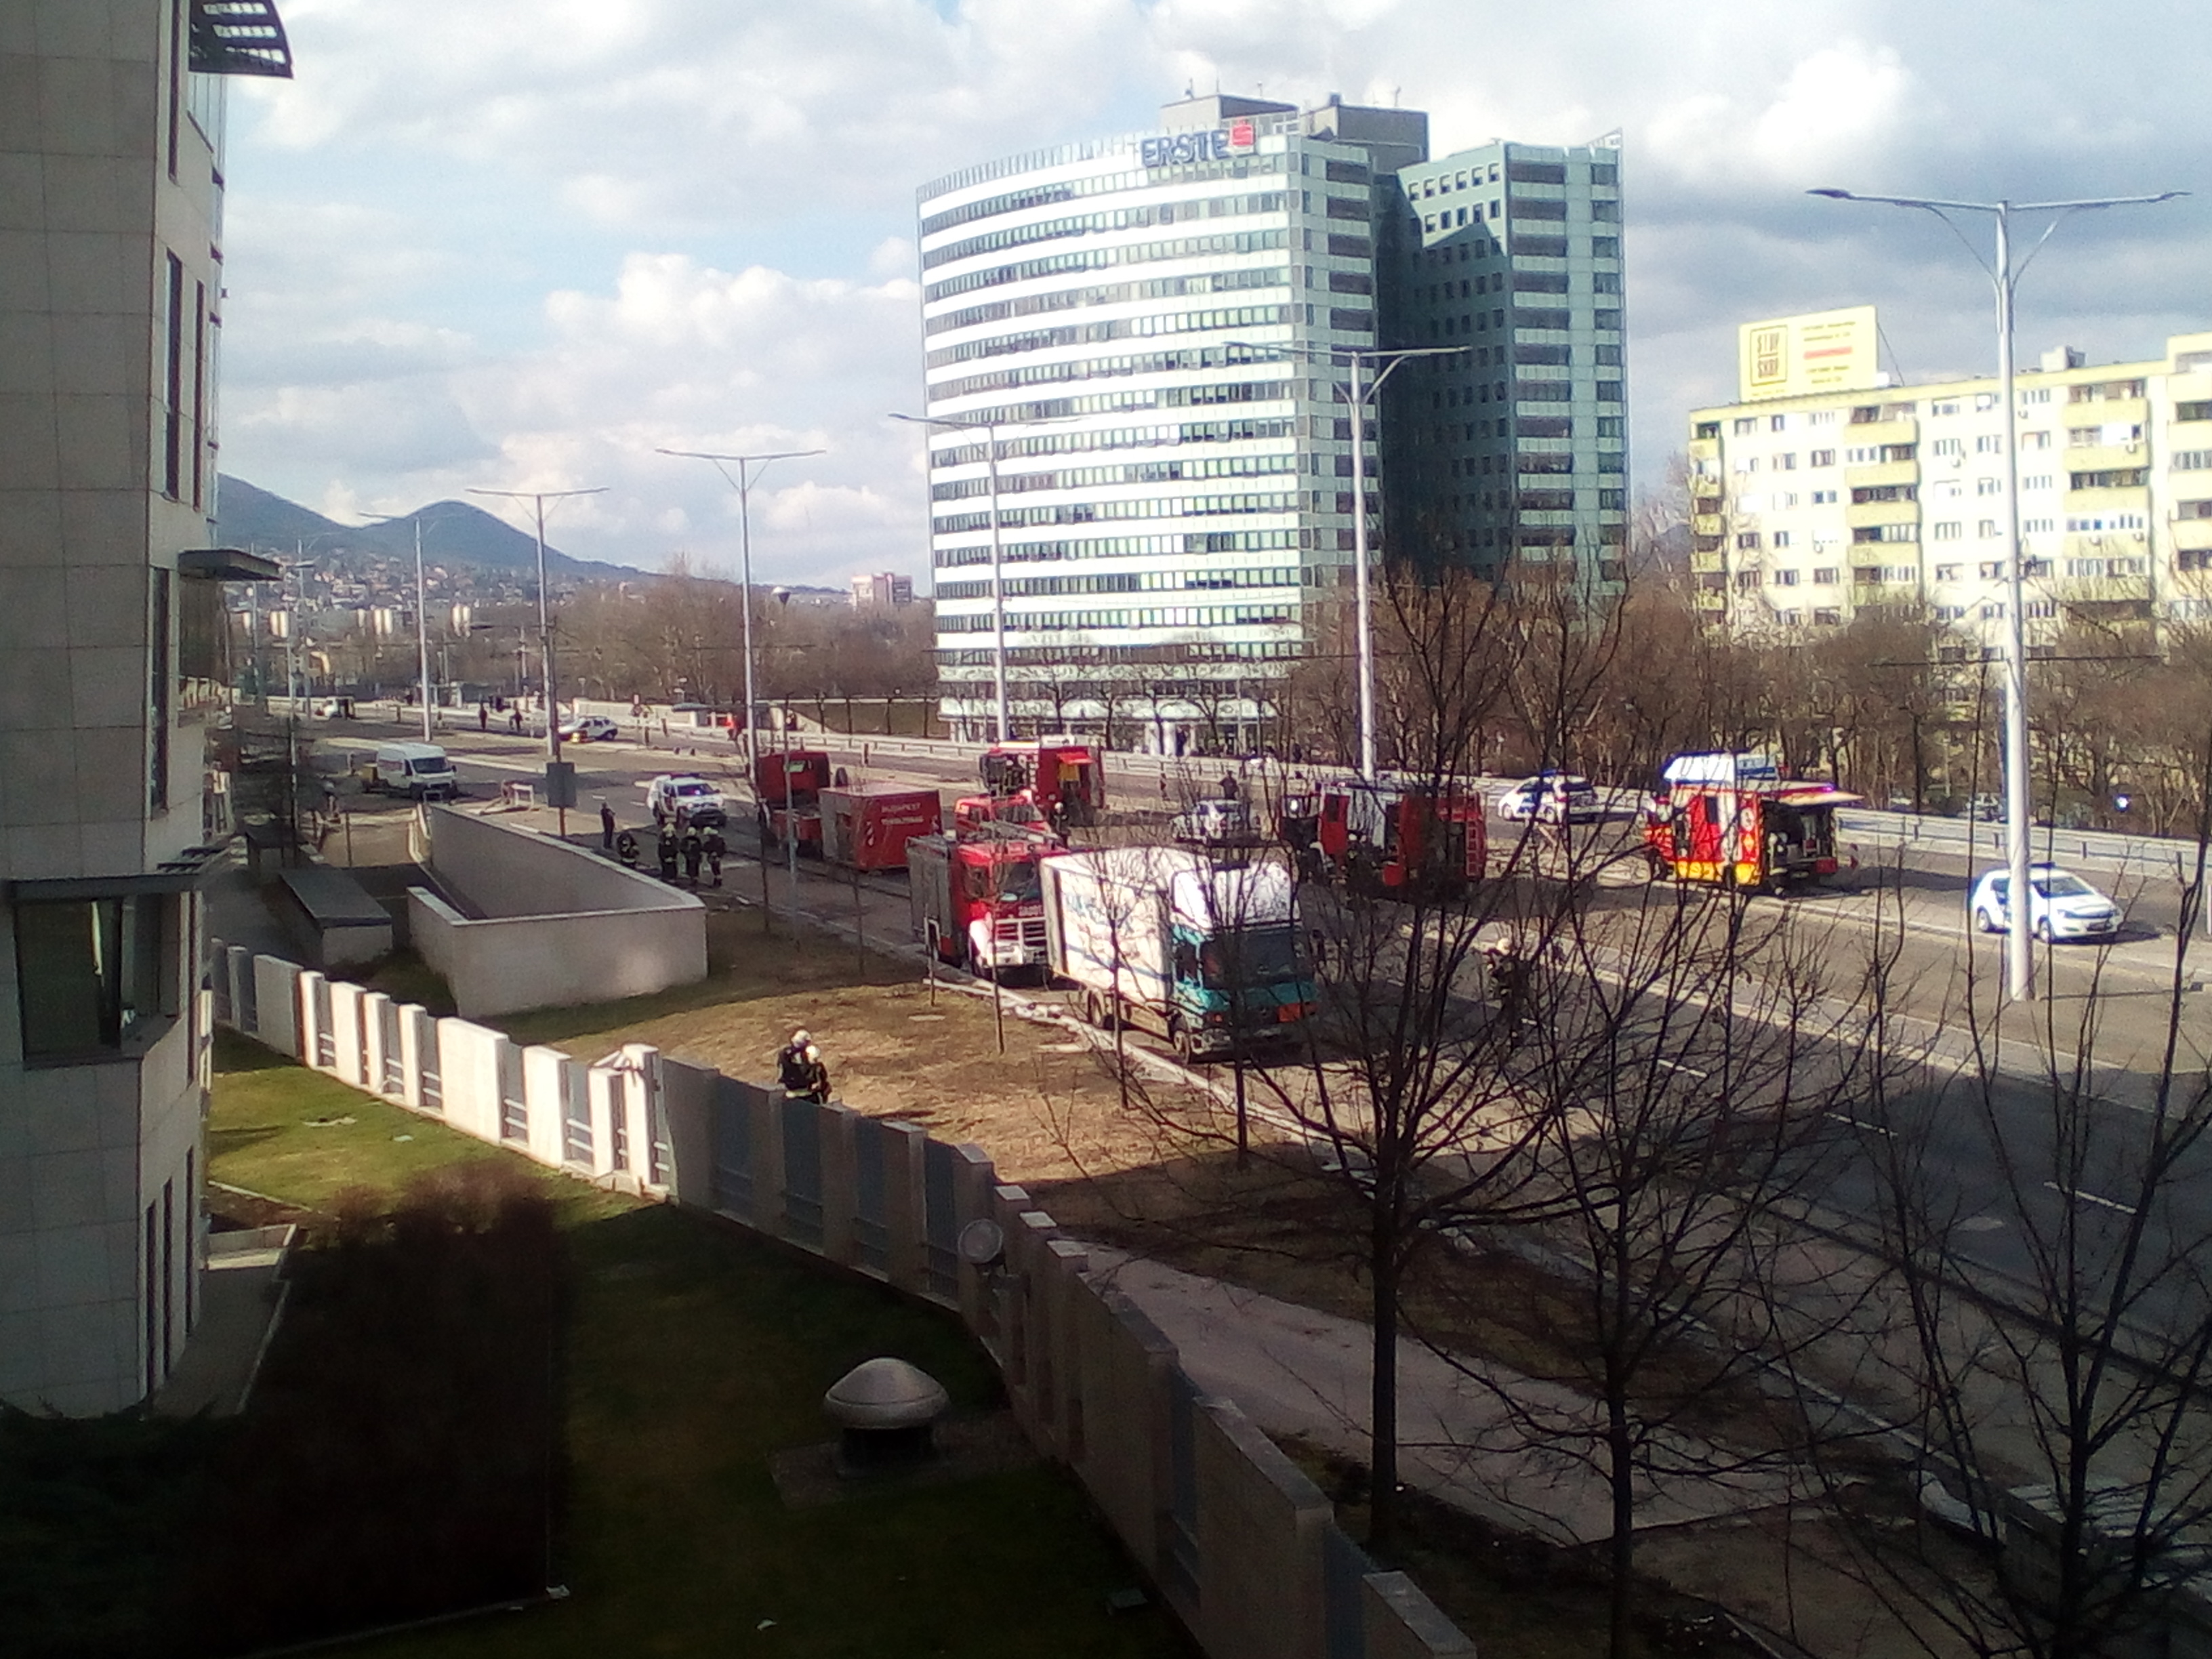 Acetont szállító kamion tartálya sérült meg, lezárták az Árpád híd egy részét